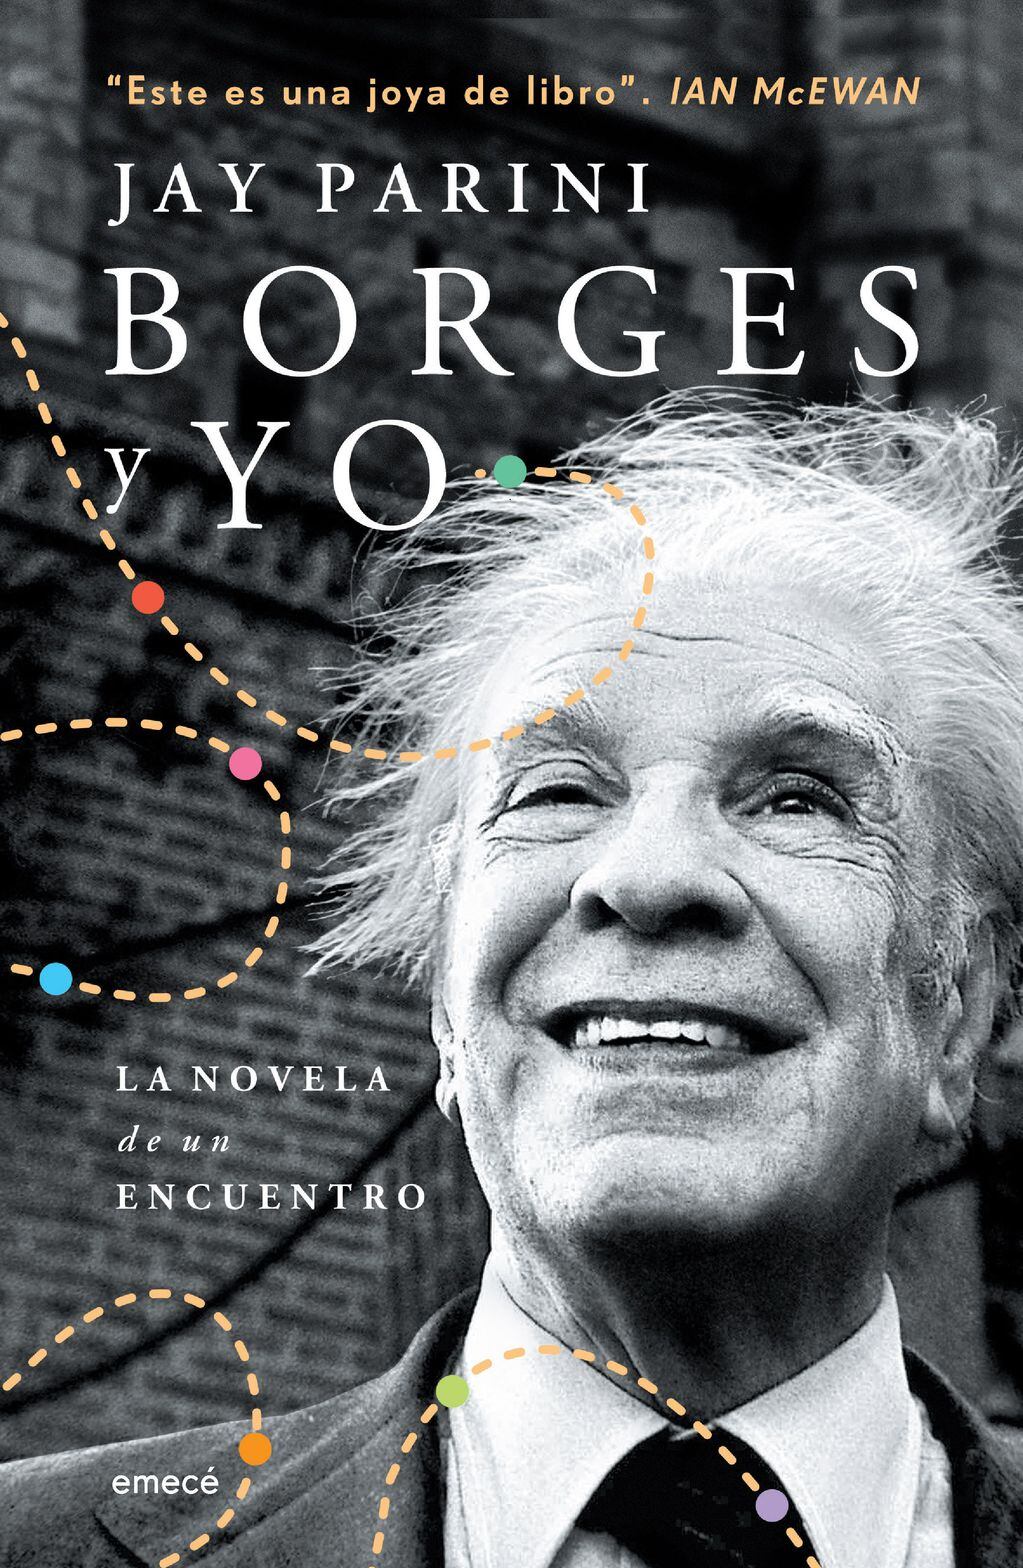 "Borges y yo", editado por Emecé, se puede conseguir por $1890 en las librerías.